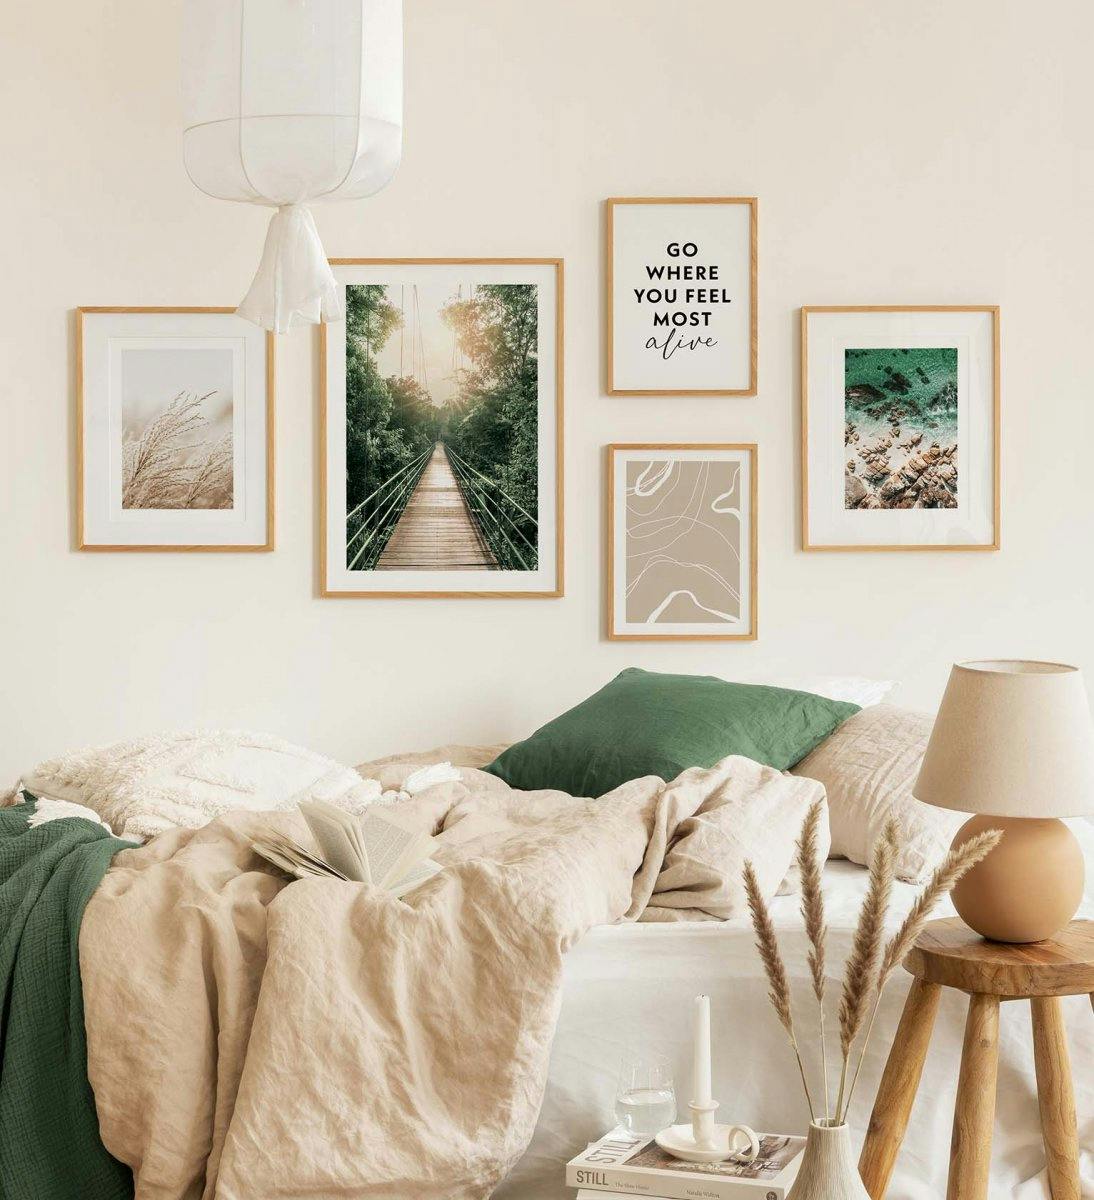 Décoration murale verte de photos de nature combinée à des citations et des line art pour la chambre